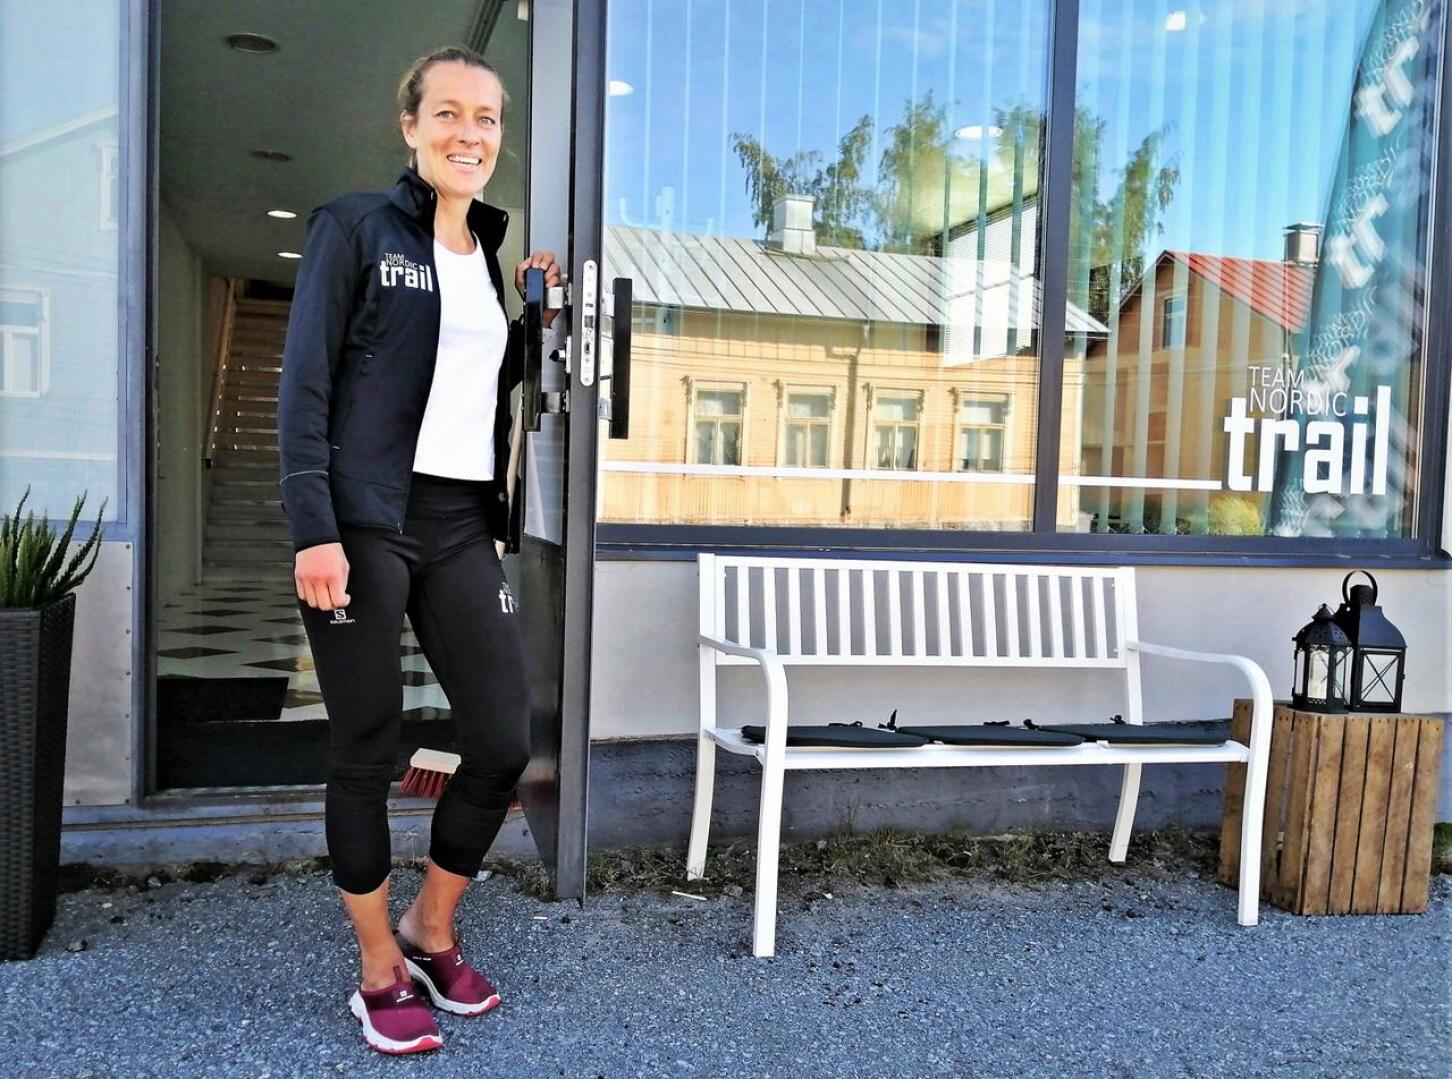 Team Nordic Trail järjestää kesällä LÖUT-ultrakisan  polkureiteillä. Aikuisille on tarjolla kolme eri pituista reittiä eli 18, 49 ja 100 km.  Lasten kidstrail on 2 km pitkä ja se on suunnattu 6-13-vuotiaille. Kuvassa toimitusjohtaja Ida Kronholm. 